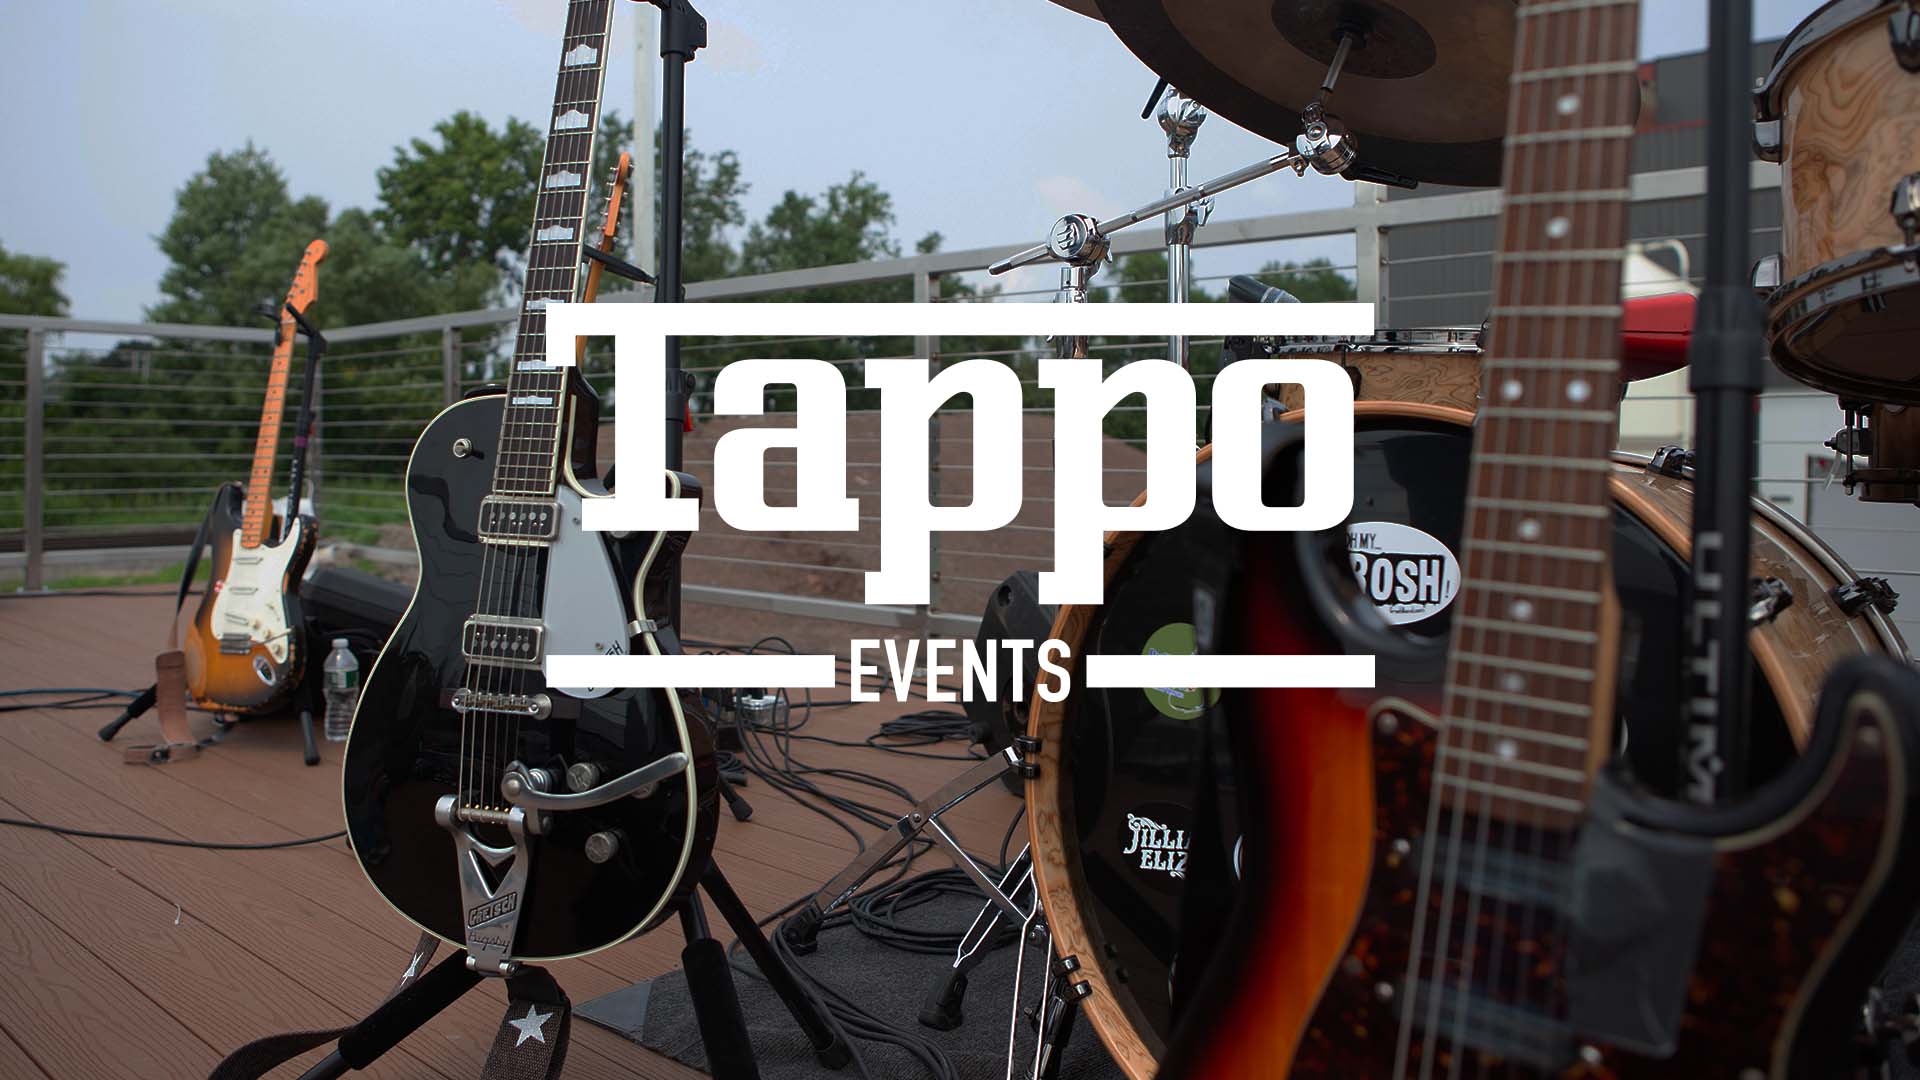 Tappo events cover